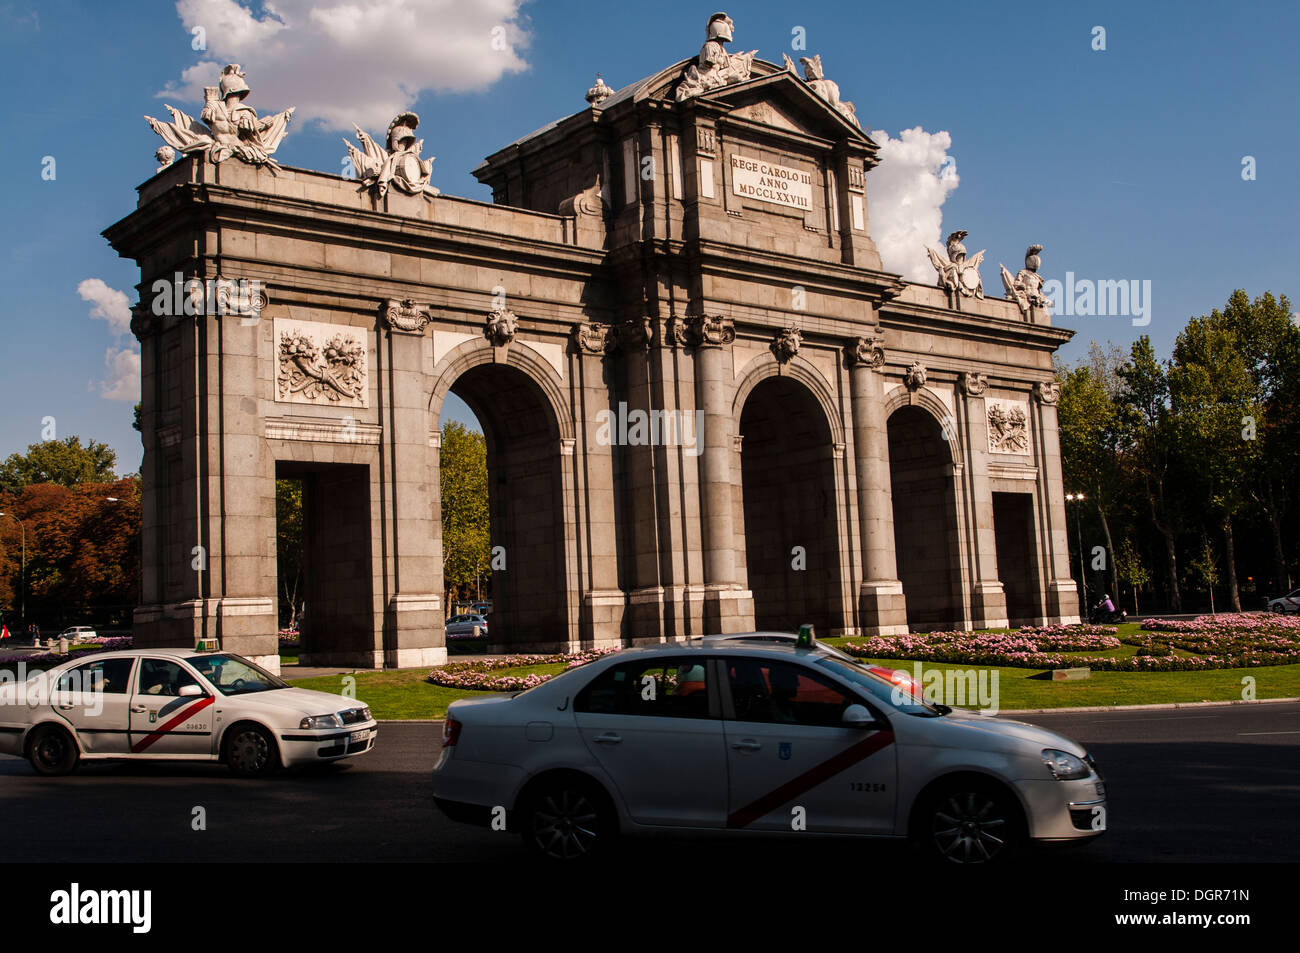 Puerta de Alcalá, Plaza de la Independencia, Madrid, España Stock Photo